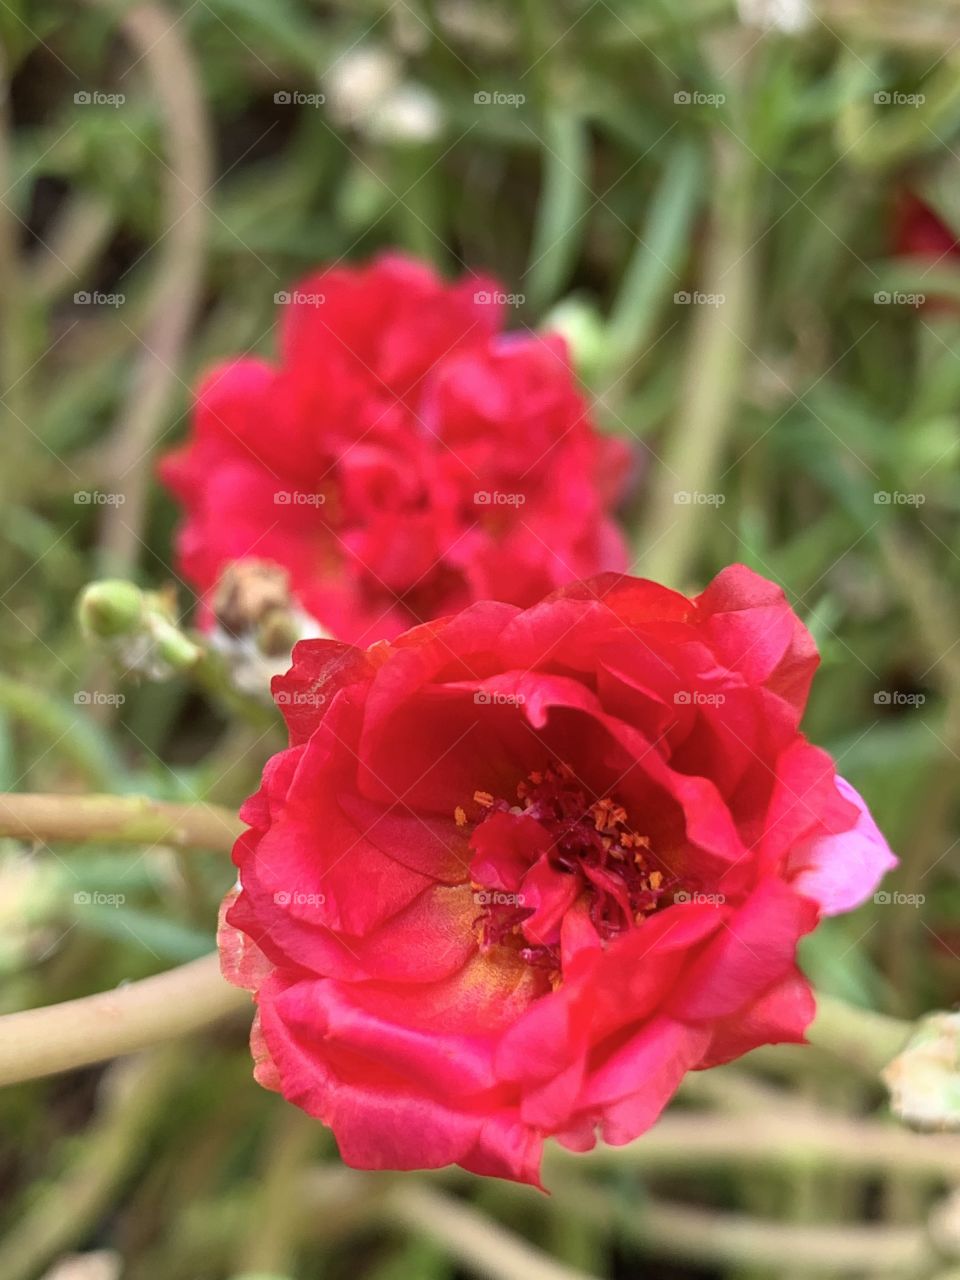 beautiful flower in my garden 